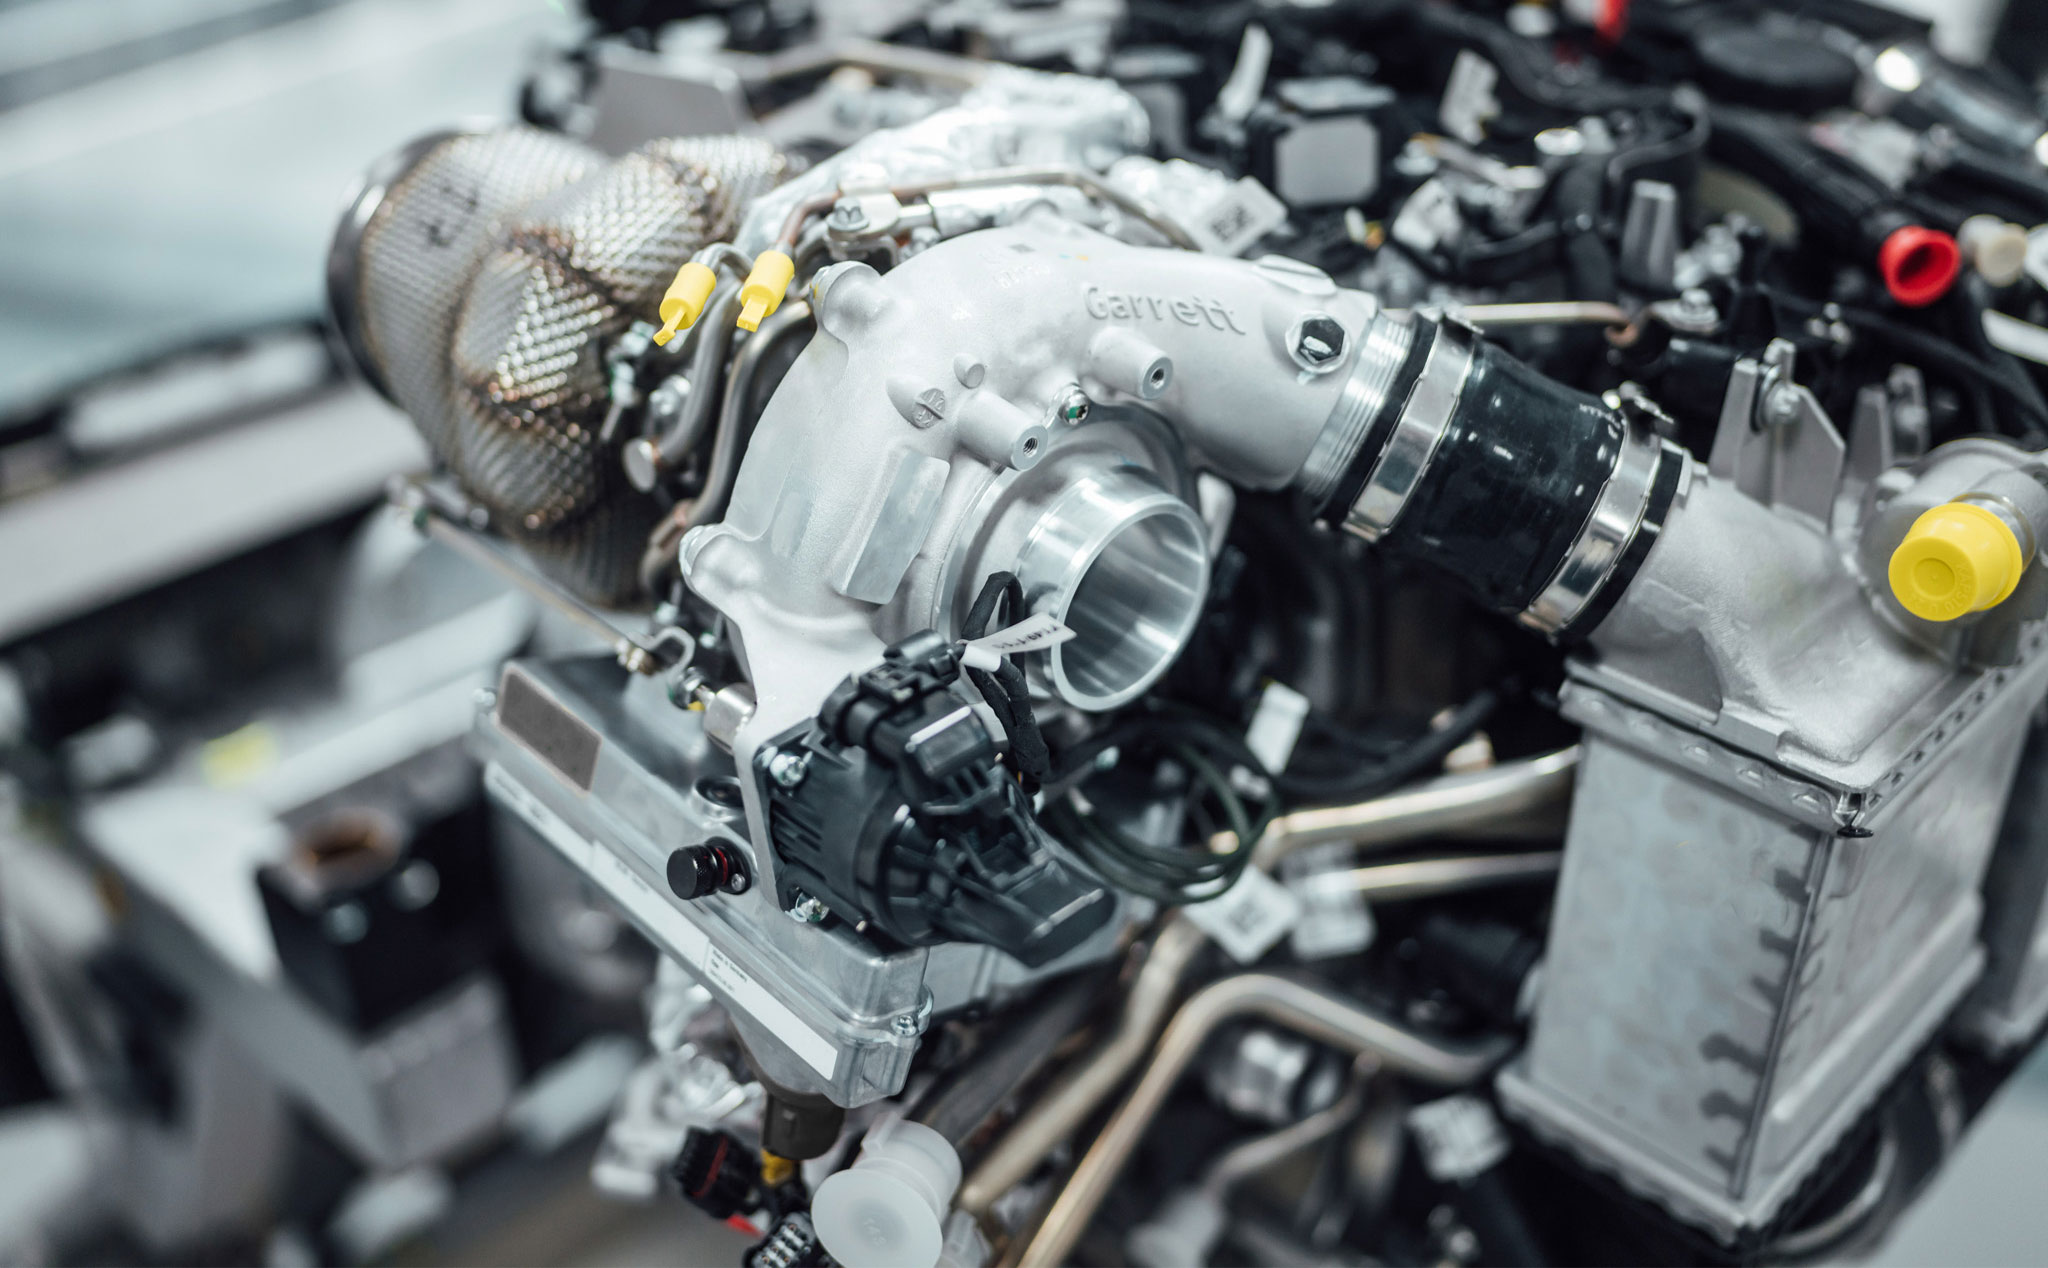 Mercedes-AMG phát triển công nghệ Turbo lai điện, giảm tối đa độ trễ